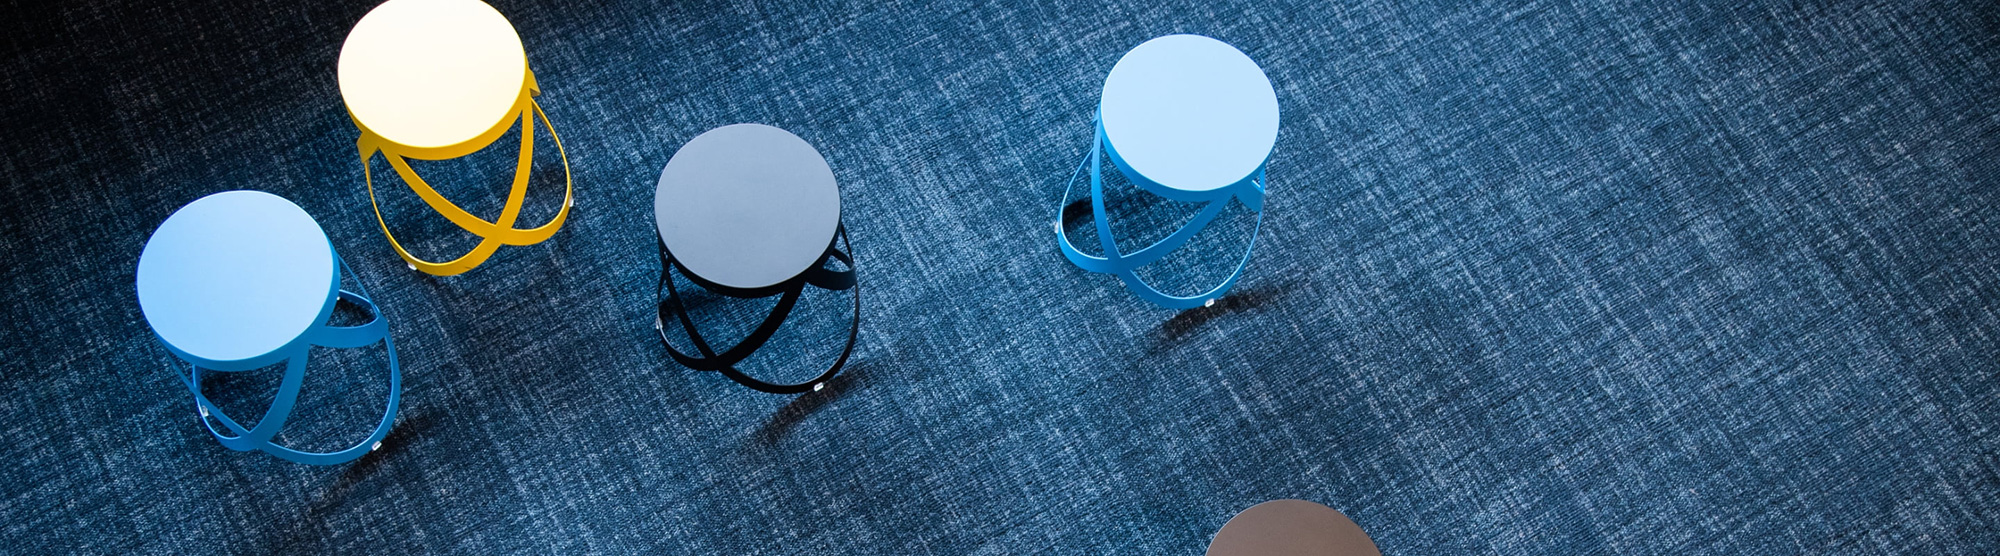 Ein blauer Teppich mit vier Hockern in weiß und verschiedenen Blautönen darauf verteilt.